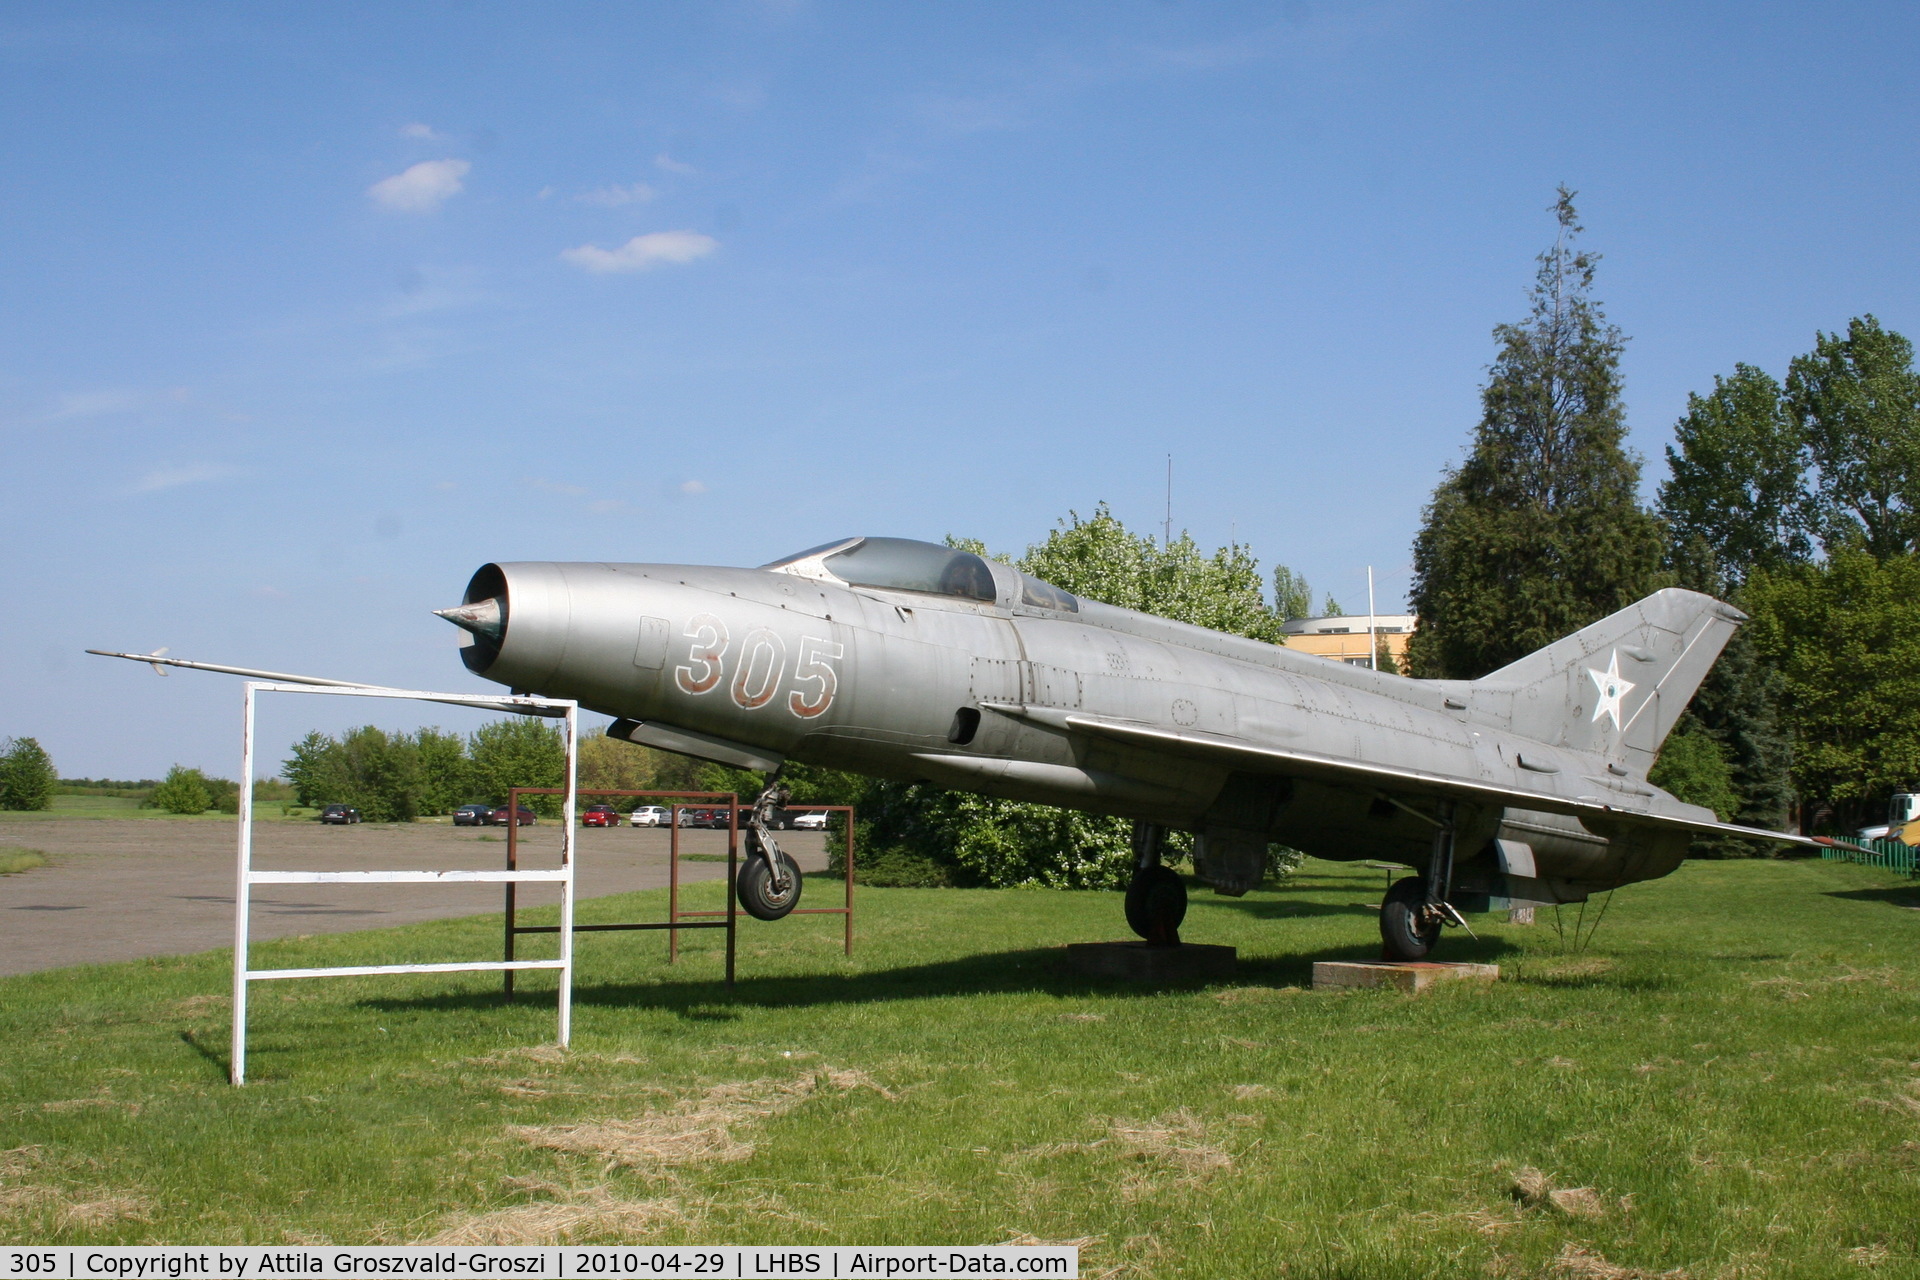 305, Mikoyan-Gurevich MiG-21F-13 C/N 741305, 305 MiG-21 cn 17532366305